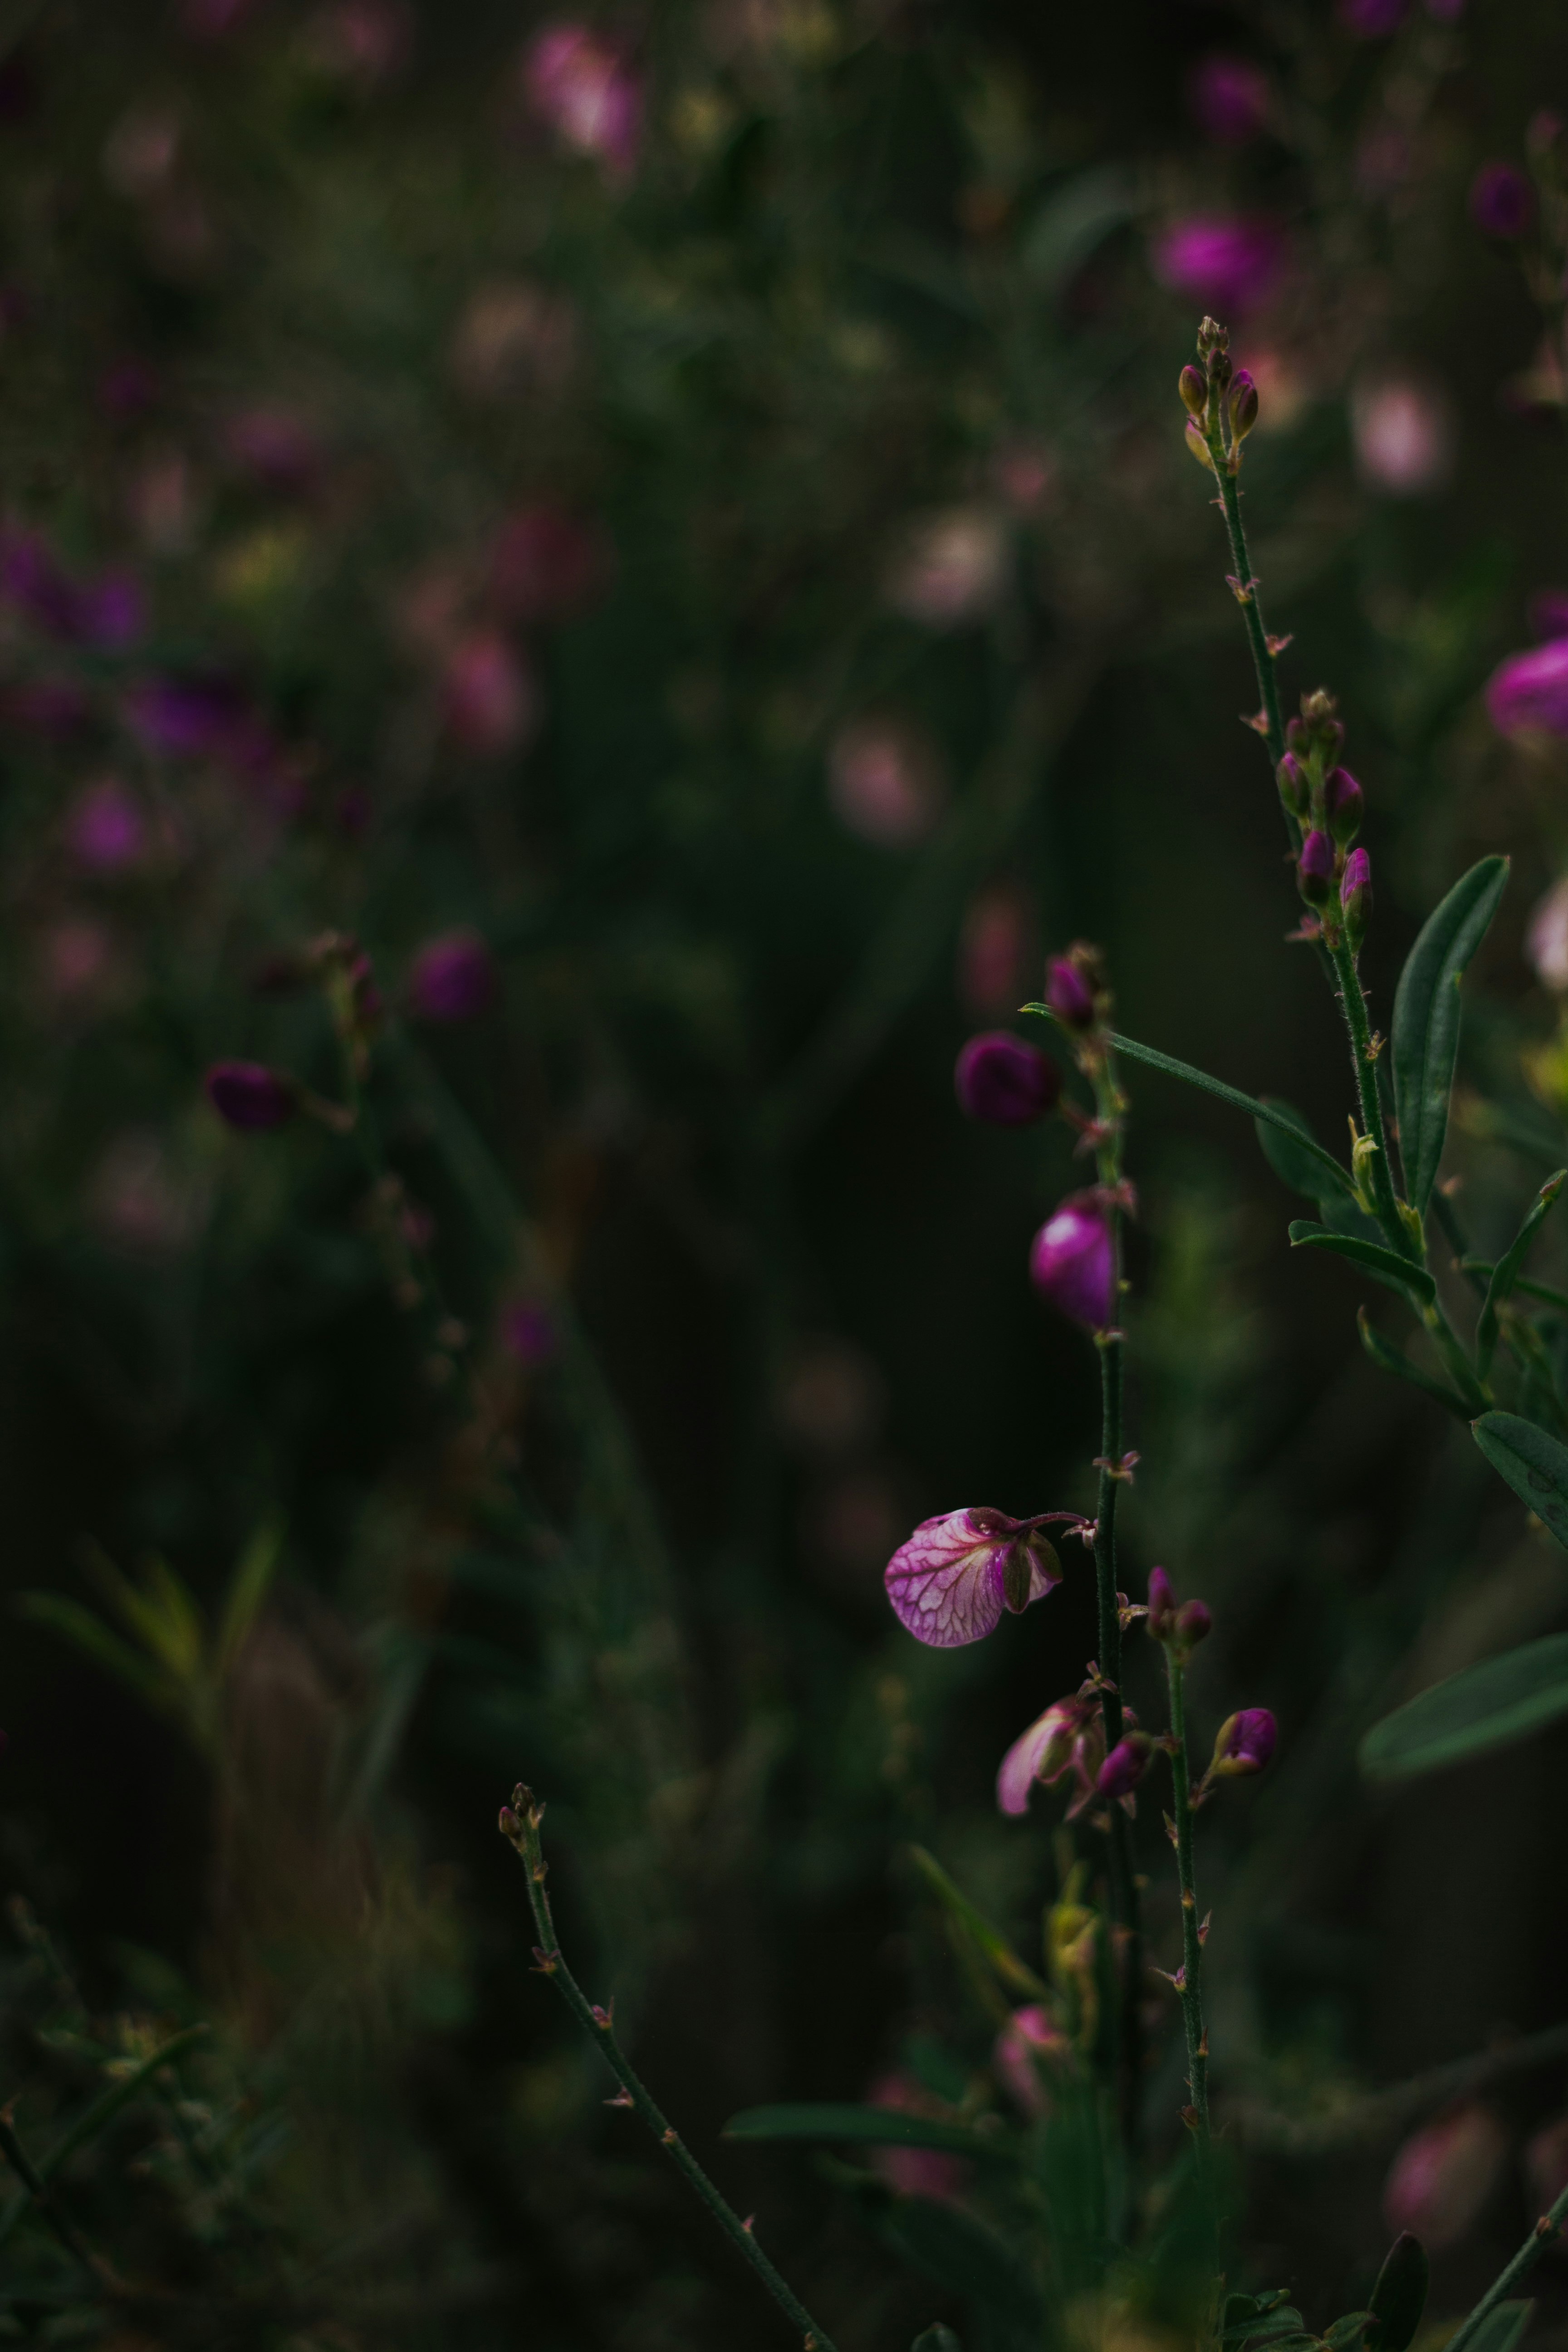 purple flower bud in tilt shift lens